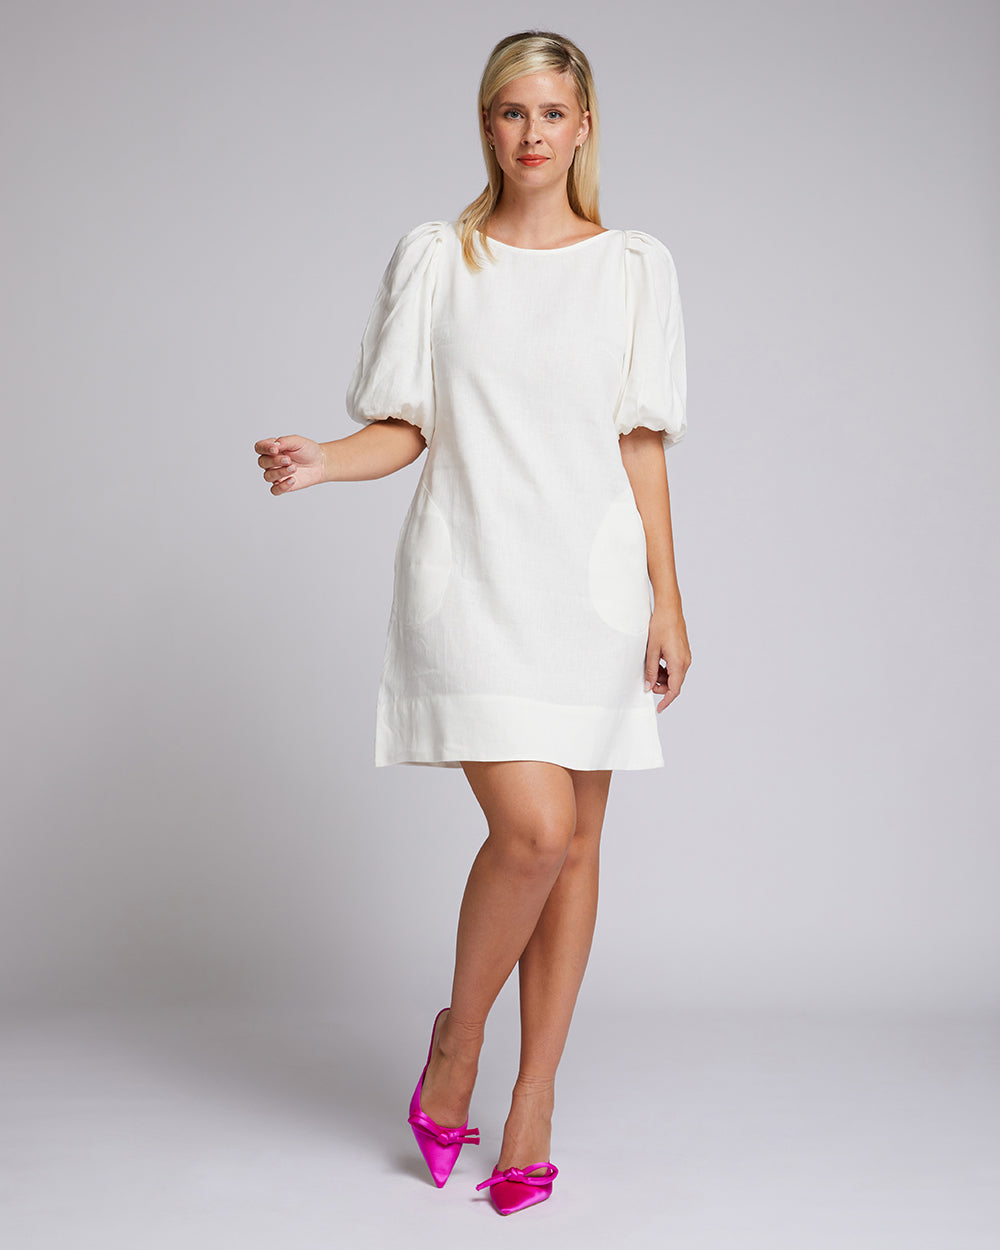 Azure Dress - White